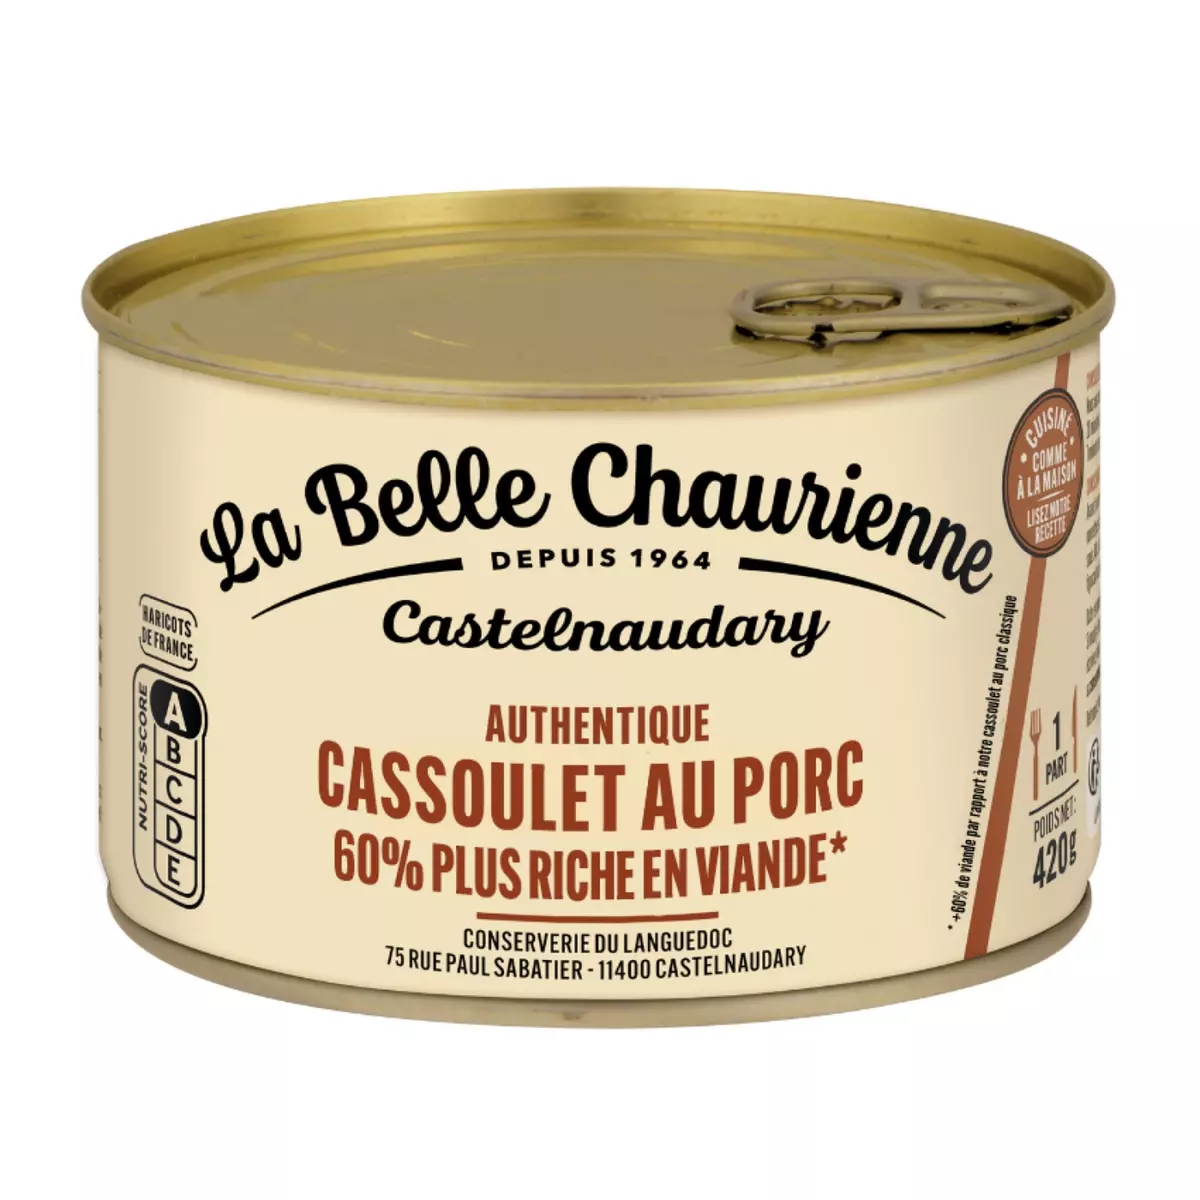 LA BELLE CHAURIENNE Authentique cassoulet au porc en conserve 1 portion 420g